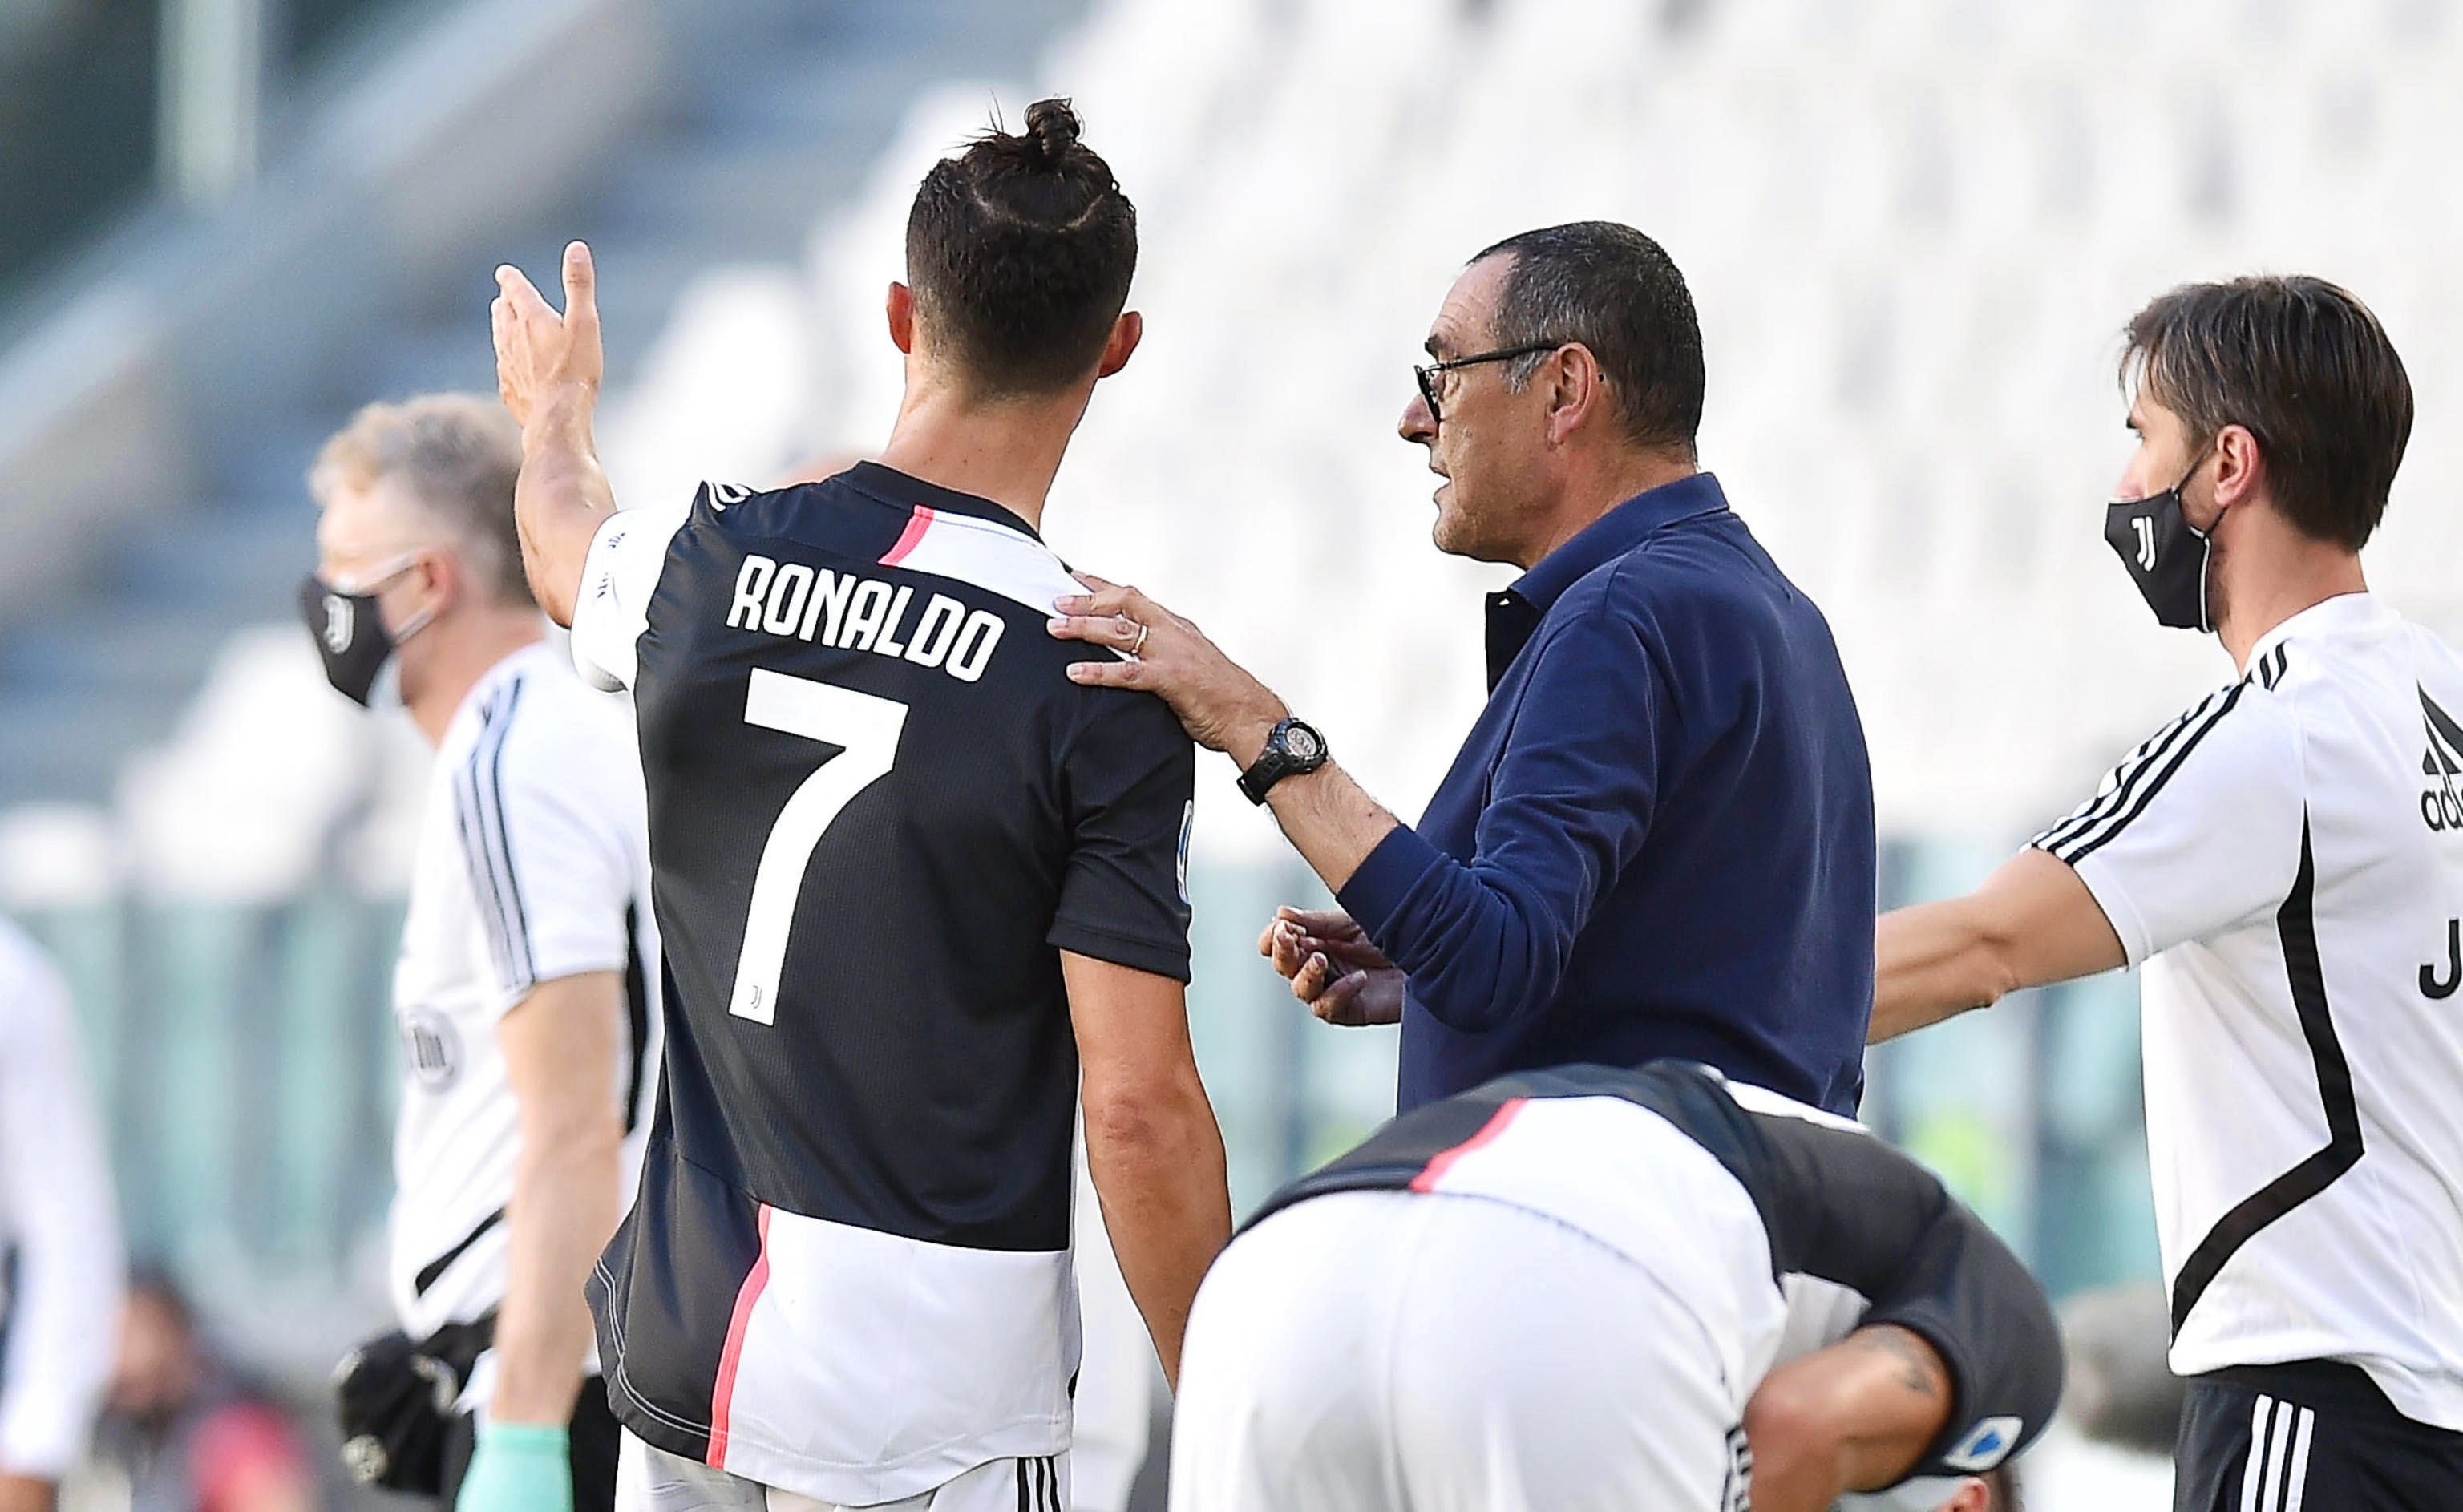 El polémico gesto de Cristiano Ronaldo a Sarri en pleno juego de la Juventus (Video)